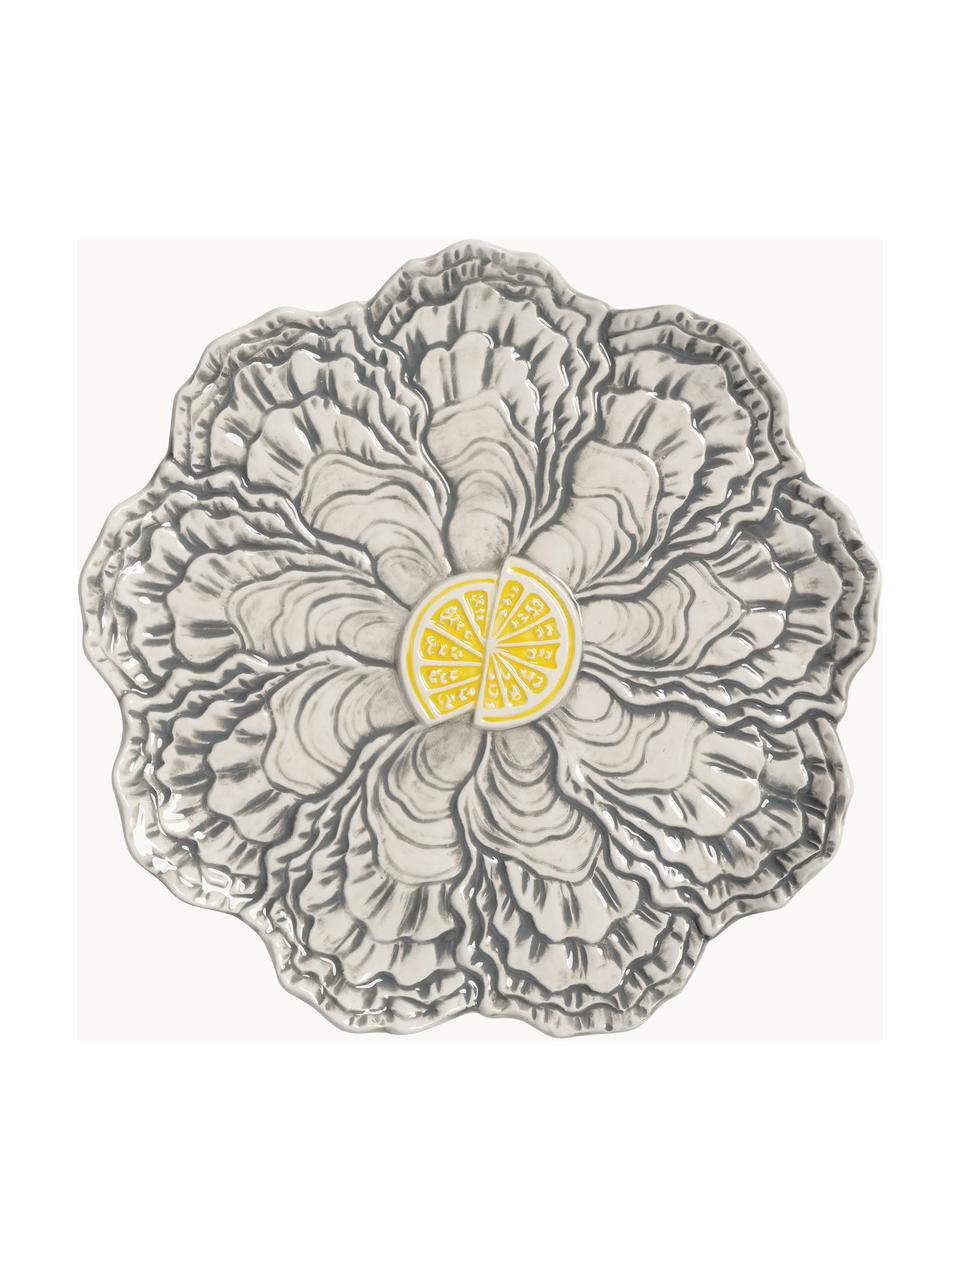 Frühstücksteller Oyster aus Dolomit, Dolomit, glasiert, Gelb, Grau, Off-White, Ø 23 cm